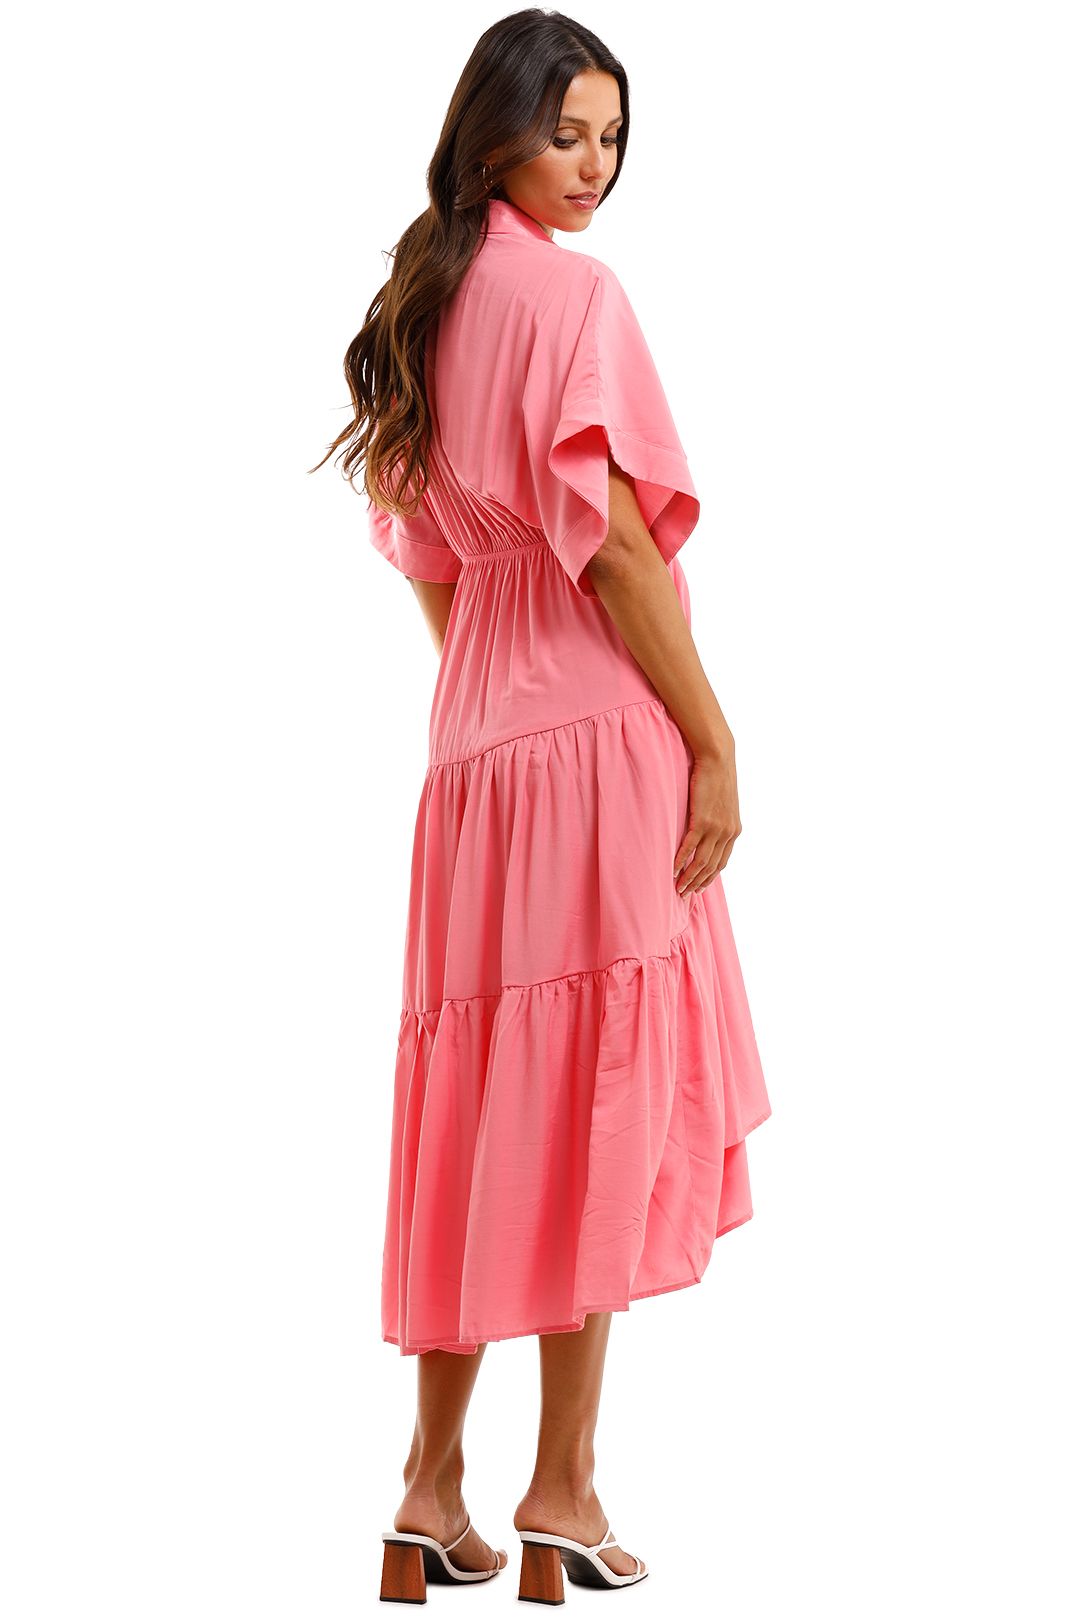 Sheike Sundays Dress Pink V Neckline